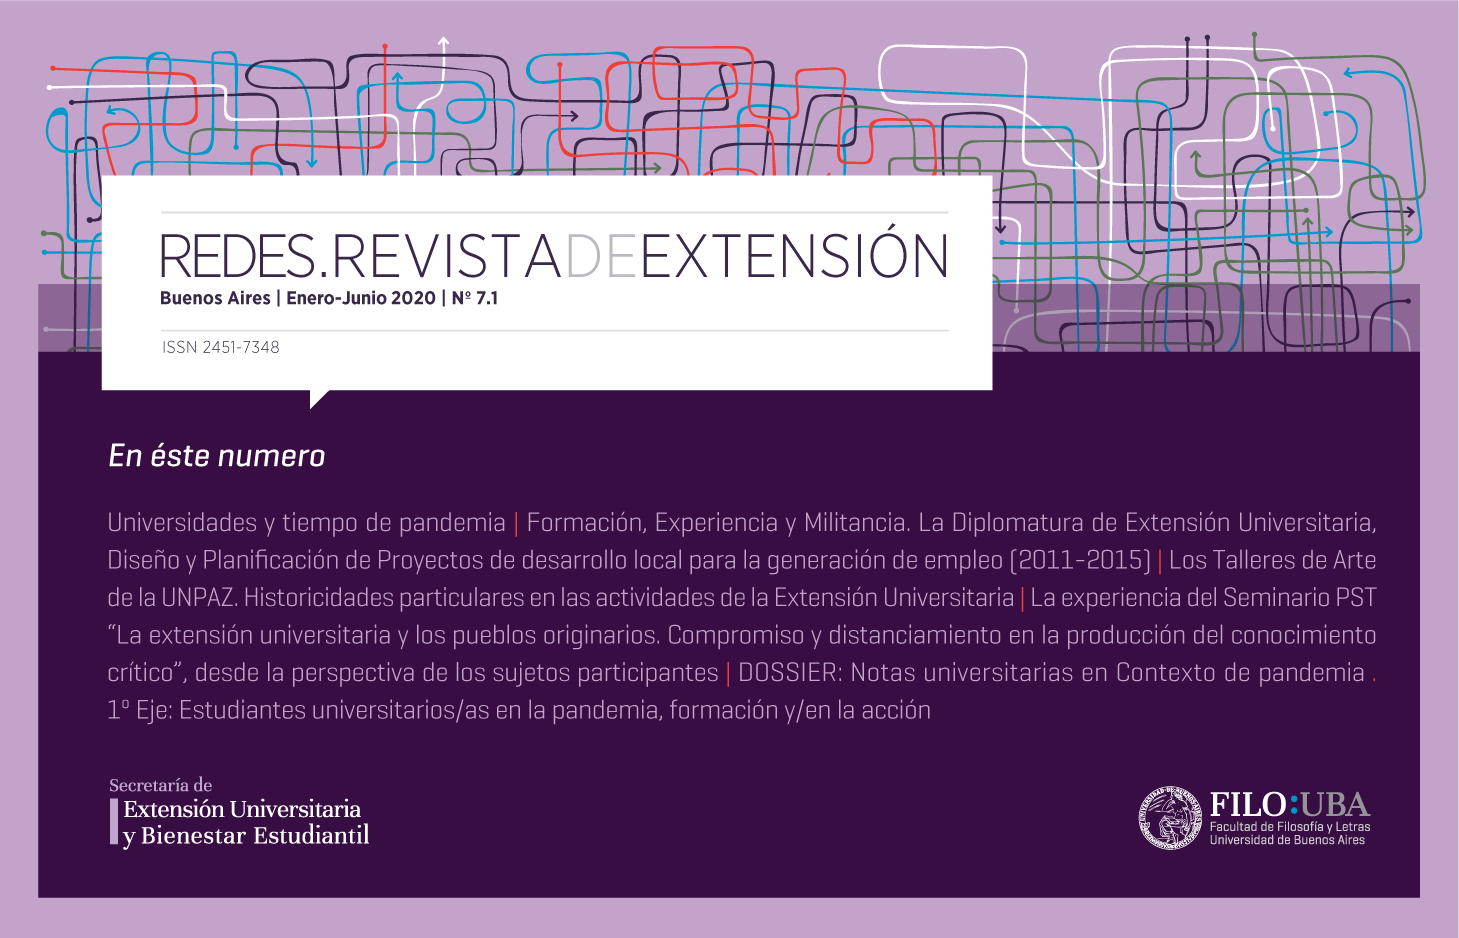 La imagen muestra la Portada de la Edición Número 7 de la Revista Redes de Extensión.